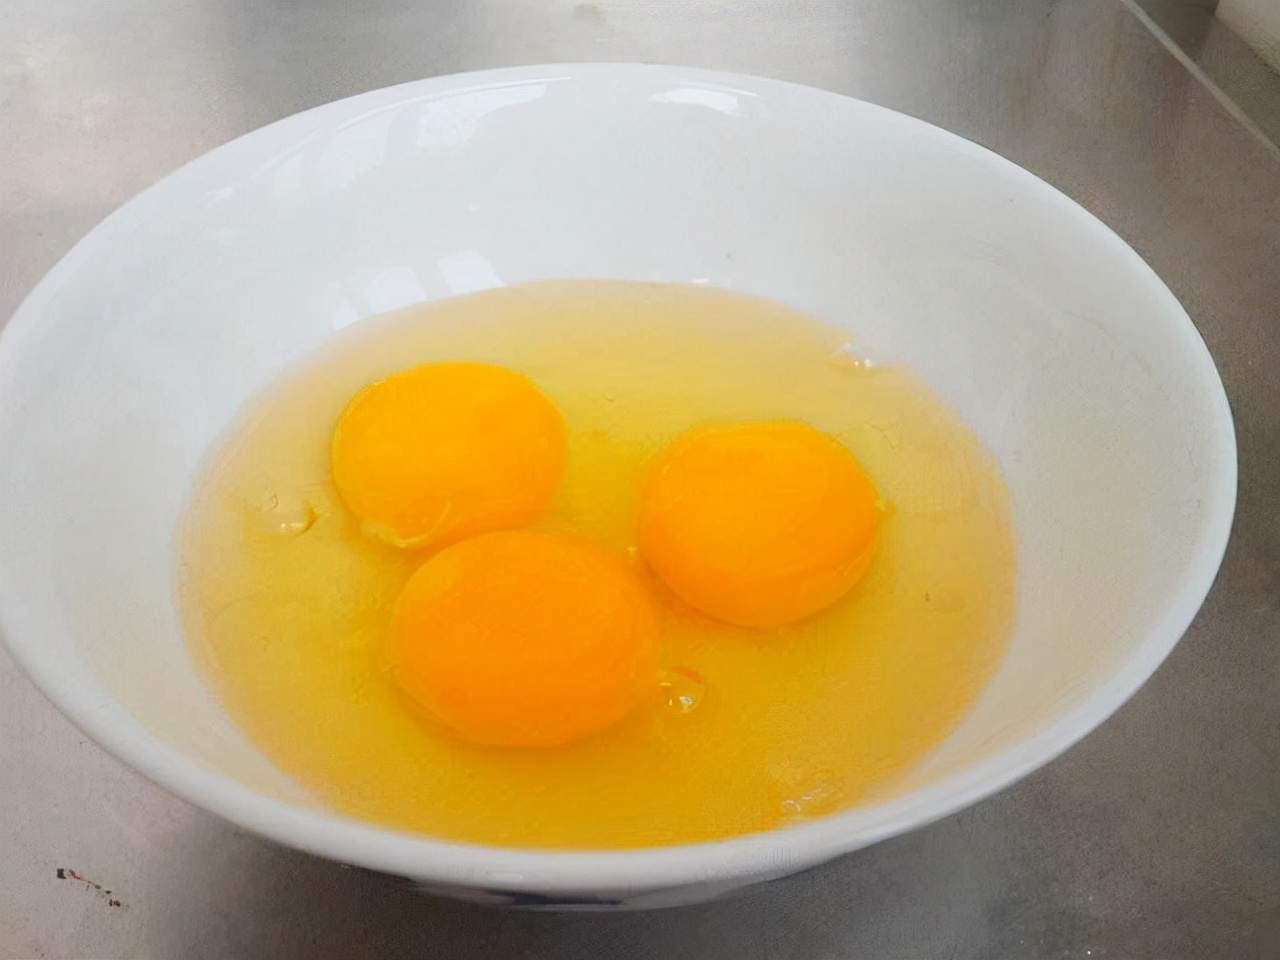 水煮蛋要煮多长时间才真正的熟？ - 知乎